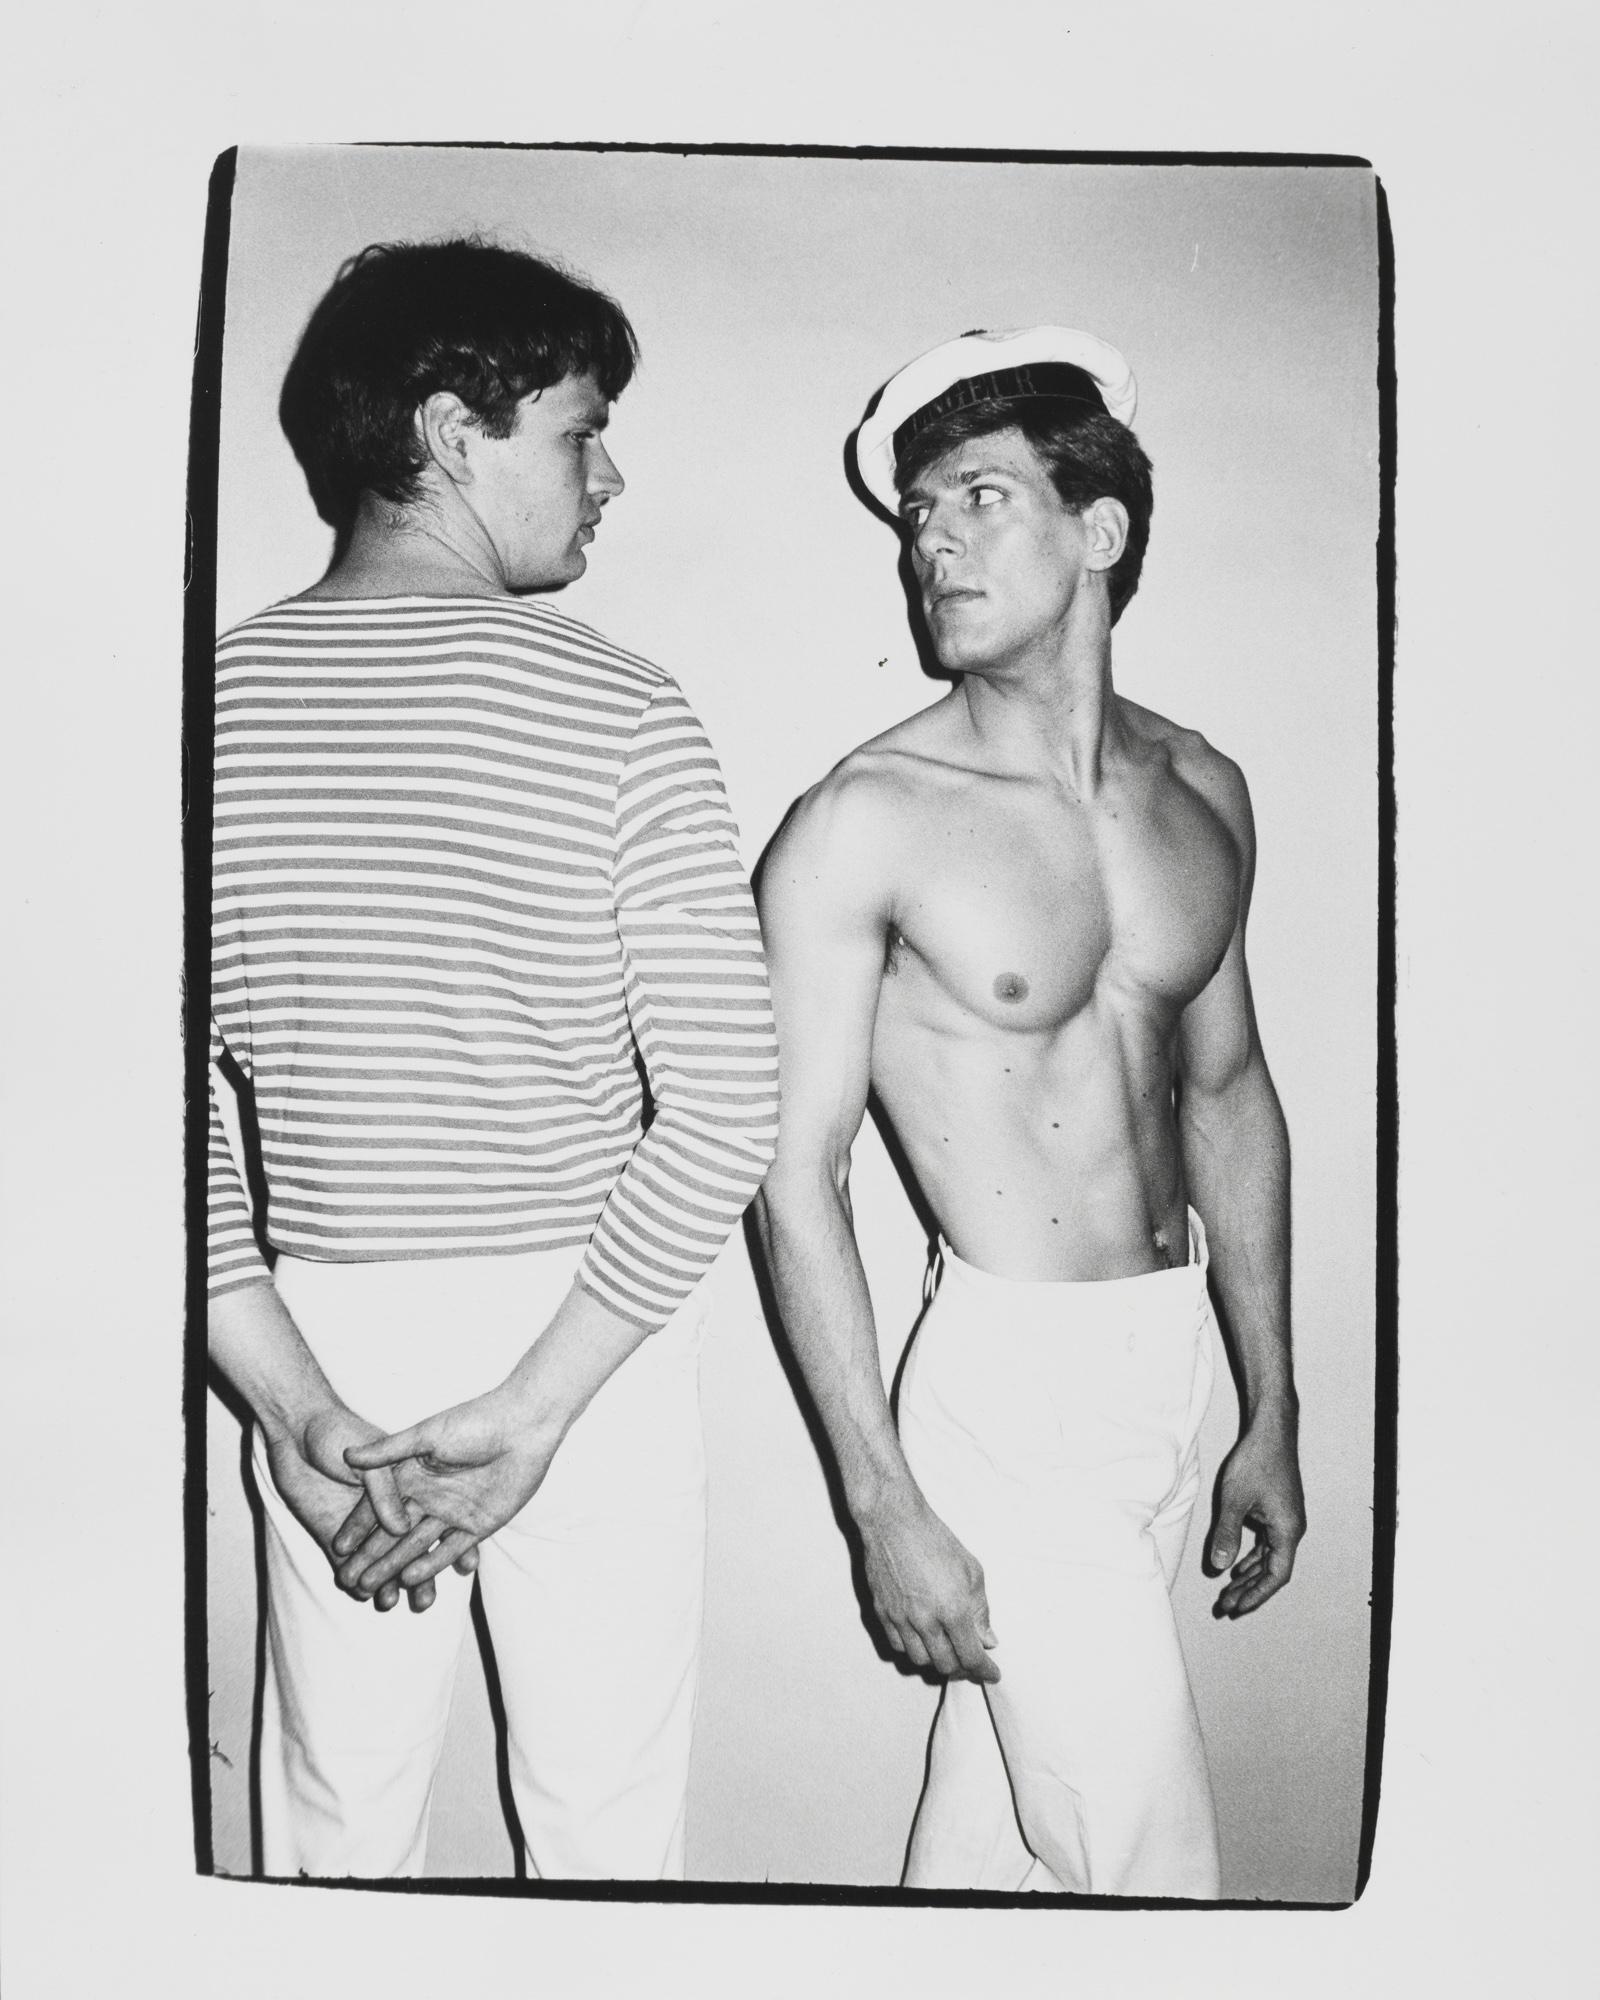 Gelatinesilberdruck von 'Querelle' Männliche Modelle von Andy Warhol